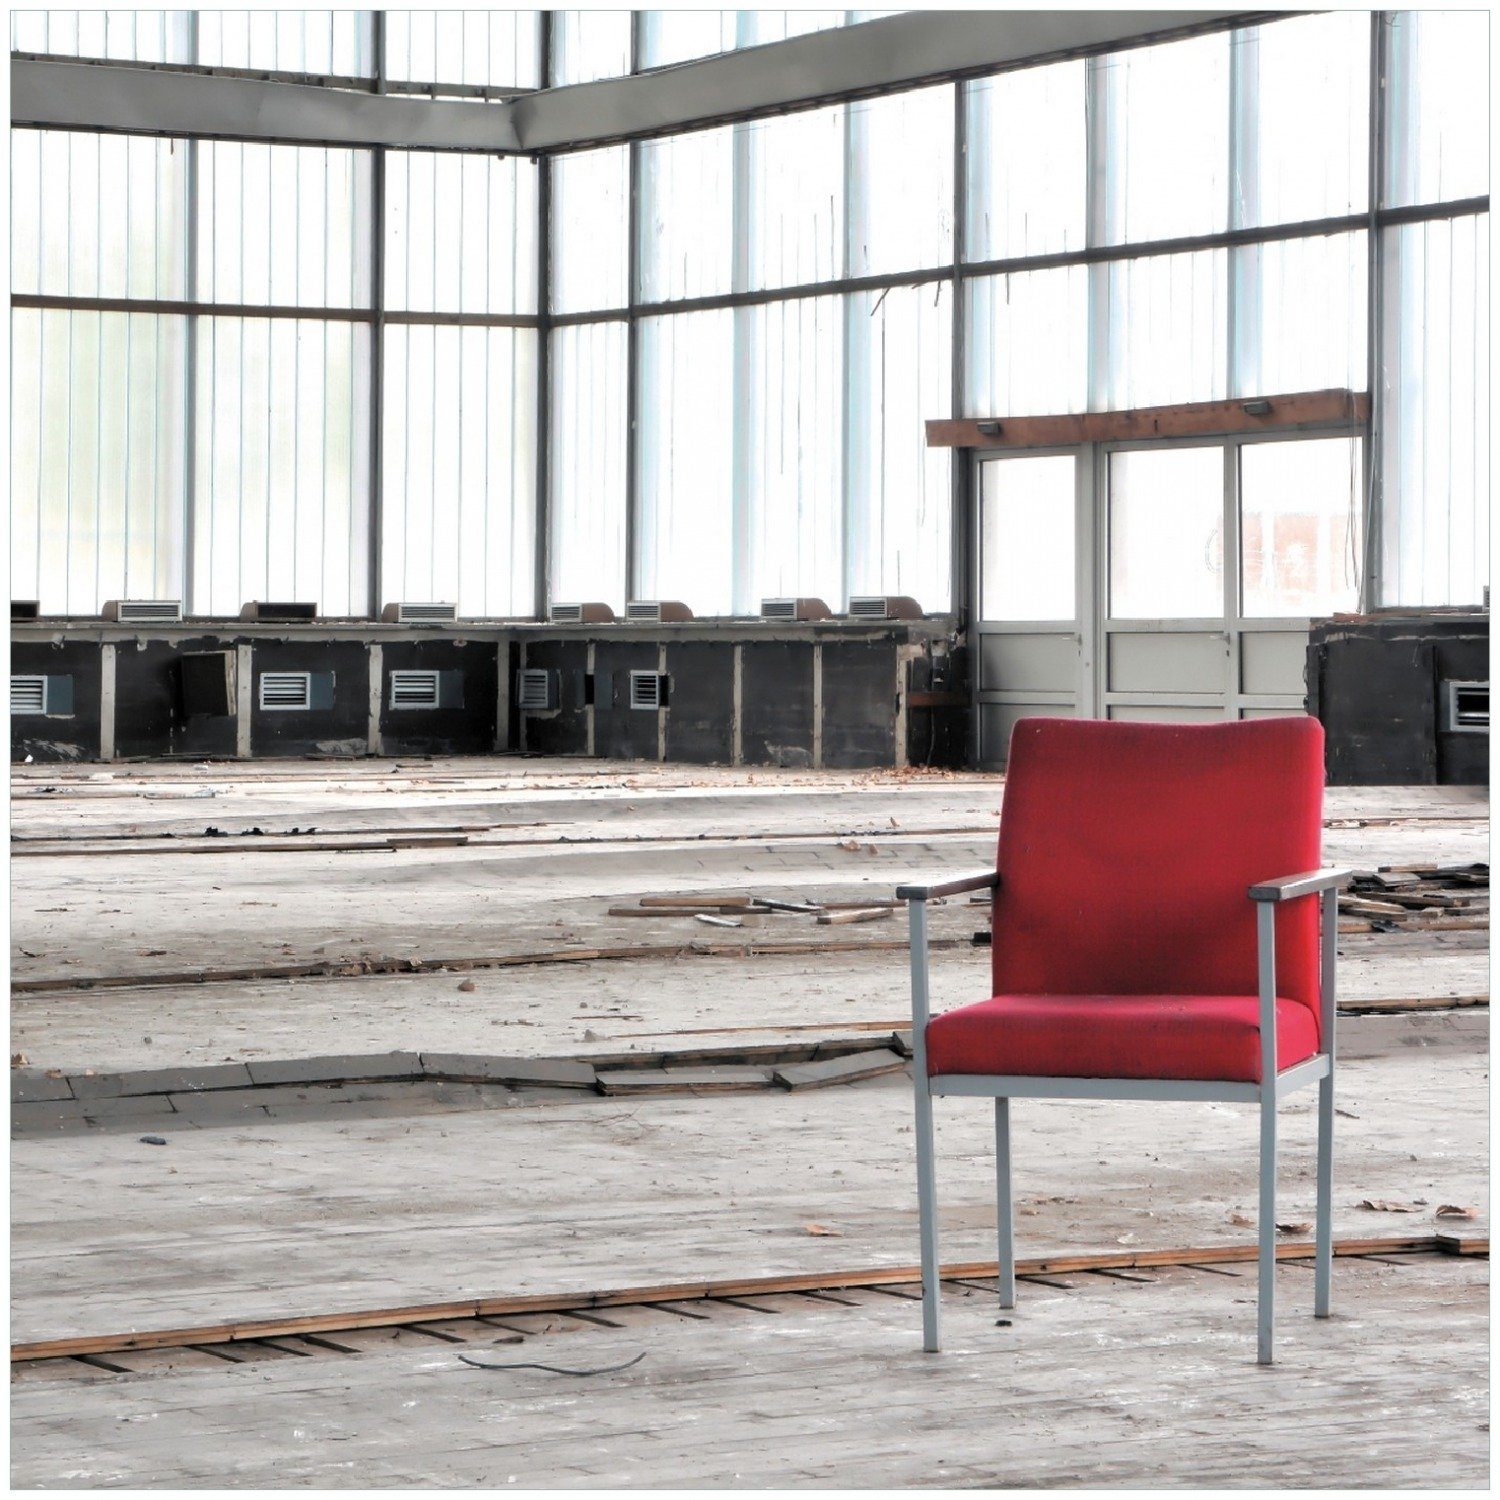 Wallario Memoboard Stille und Halle einer - Leere in alten roter ein Stuhl einsamer